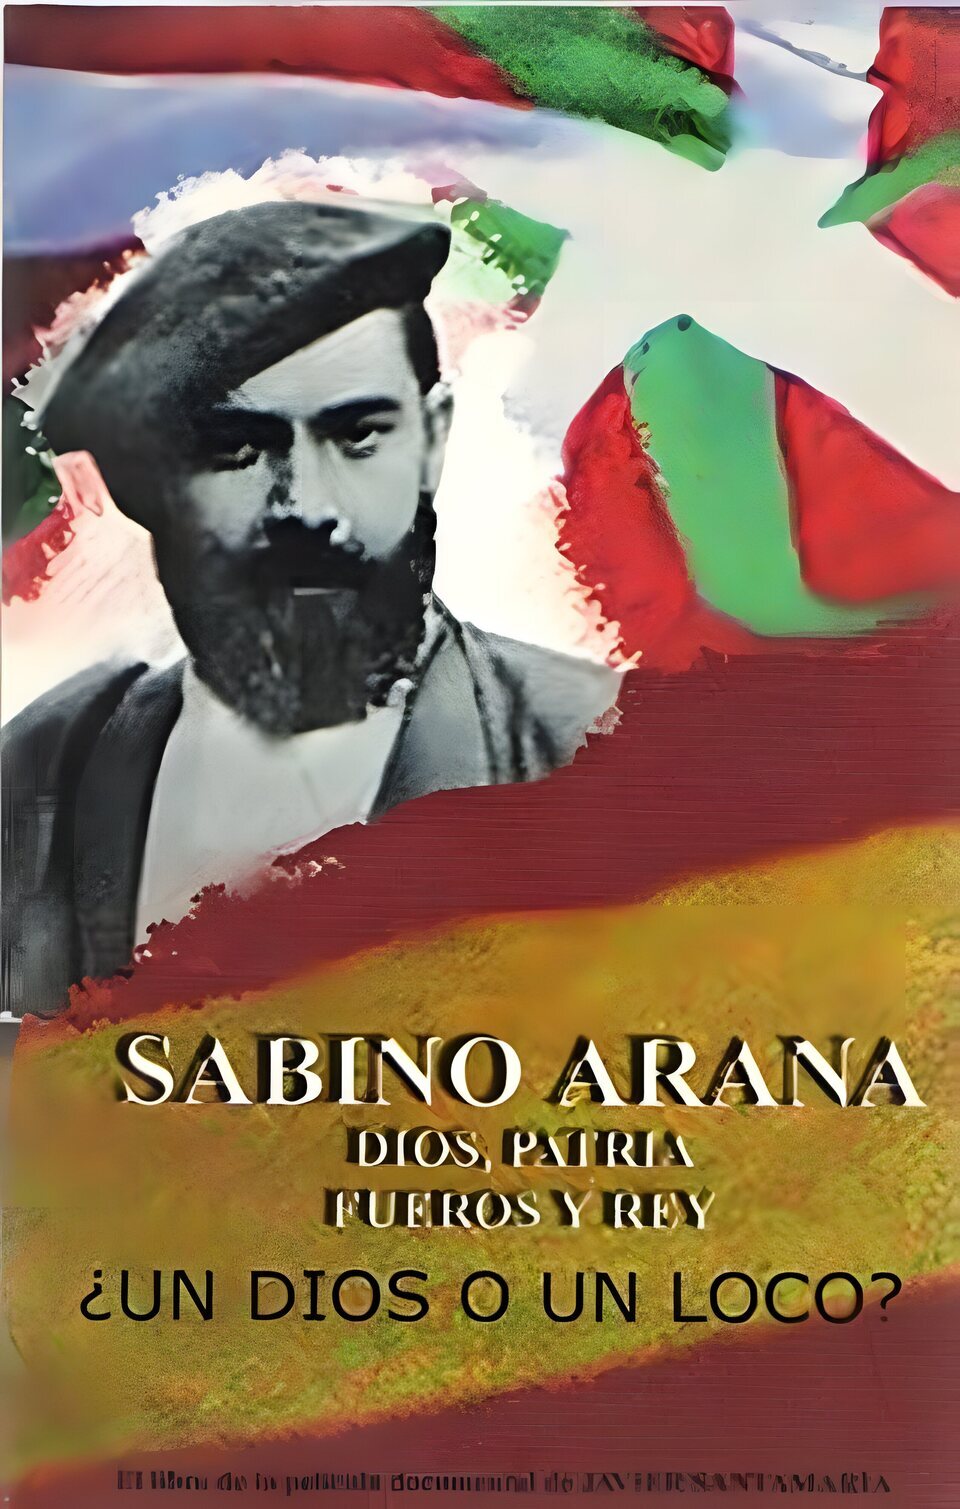 Cartel de Sabino Arana, dios, patria, fueros y rey - España